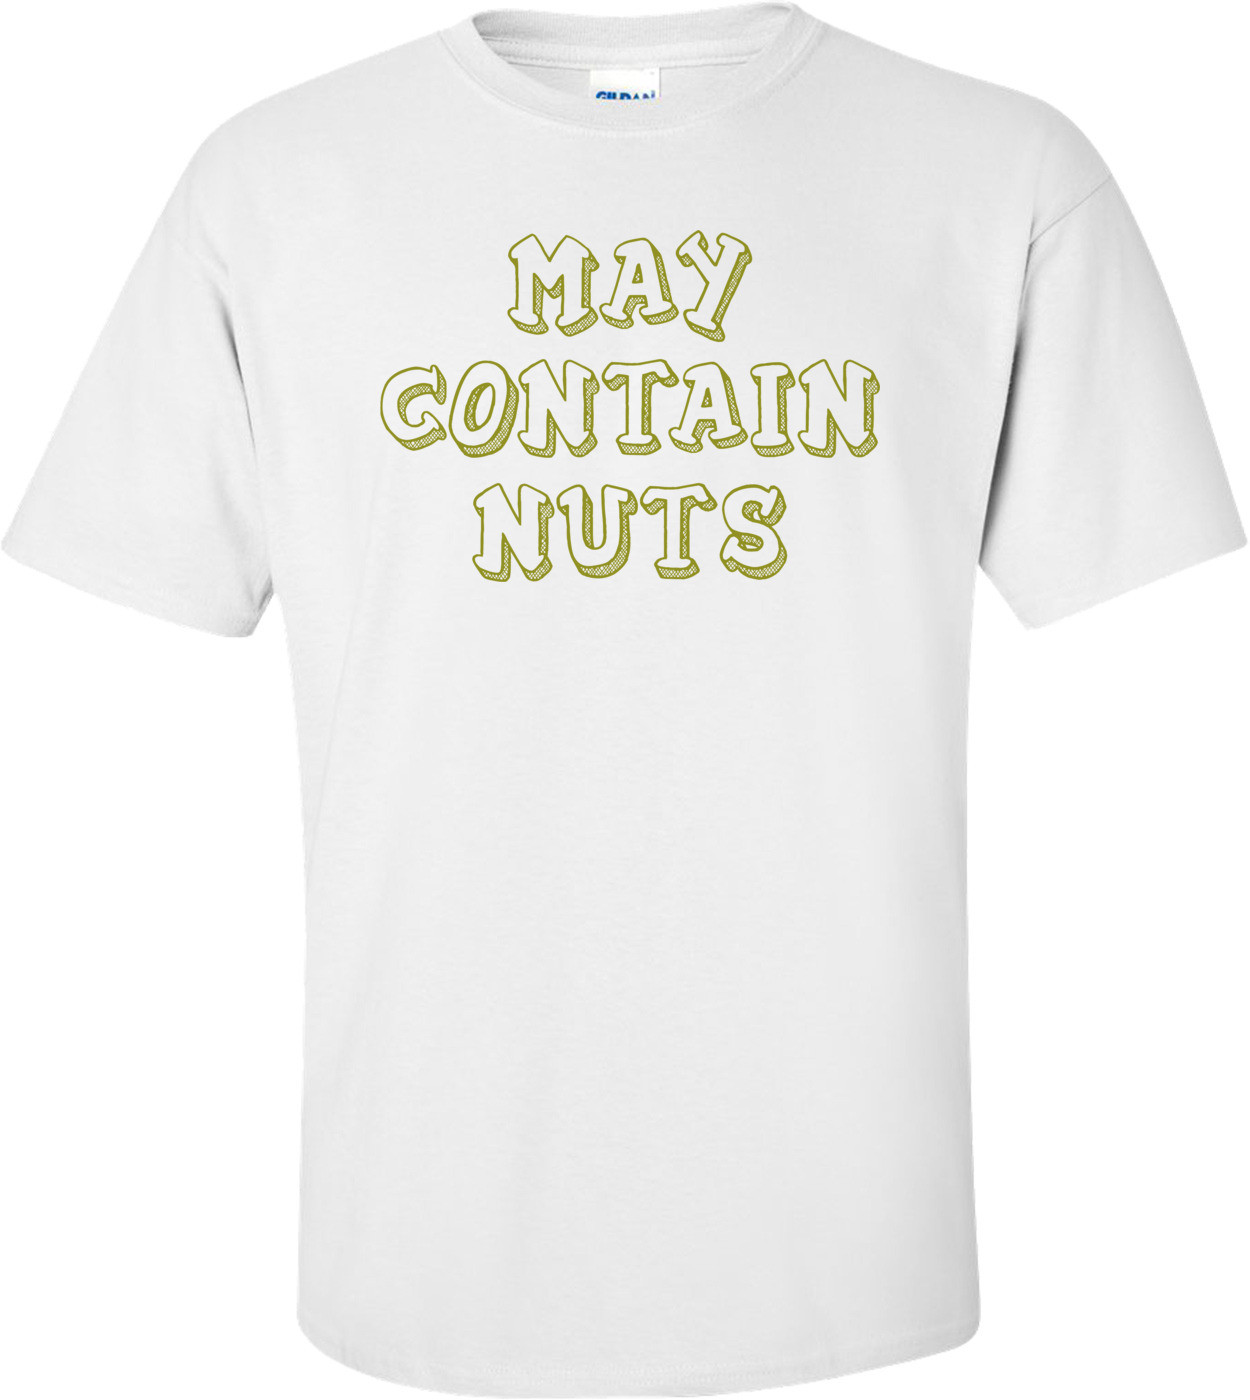 MAY CONTAIN NUTS Shirt